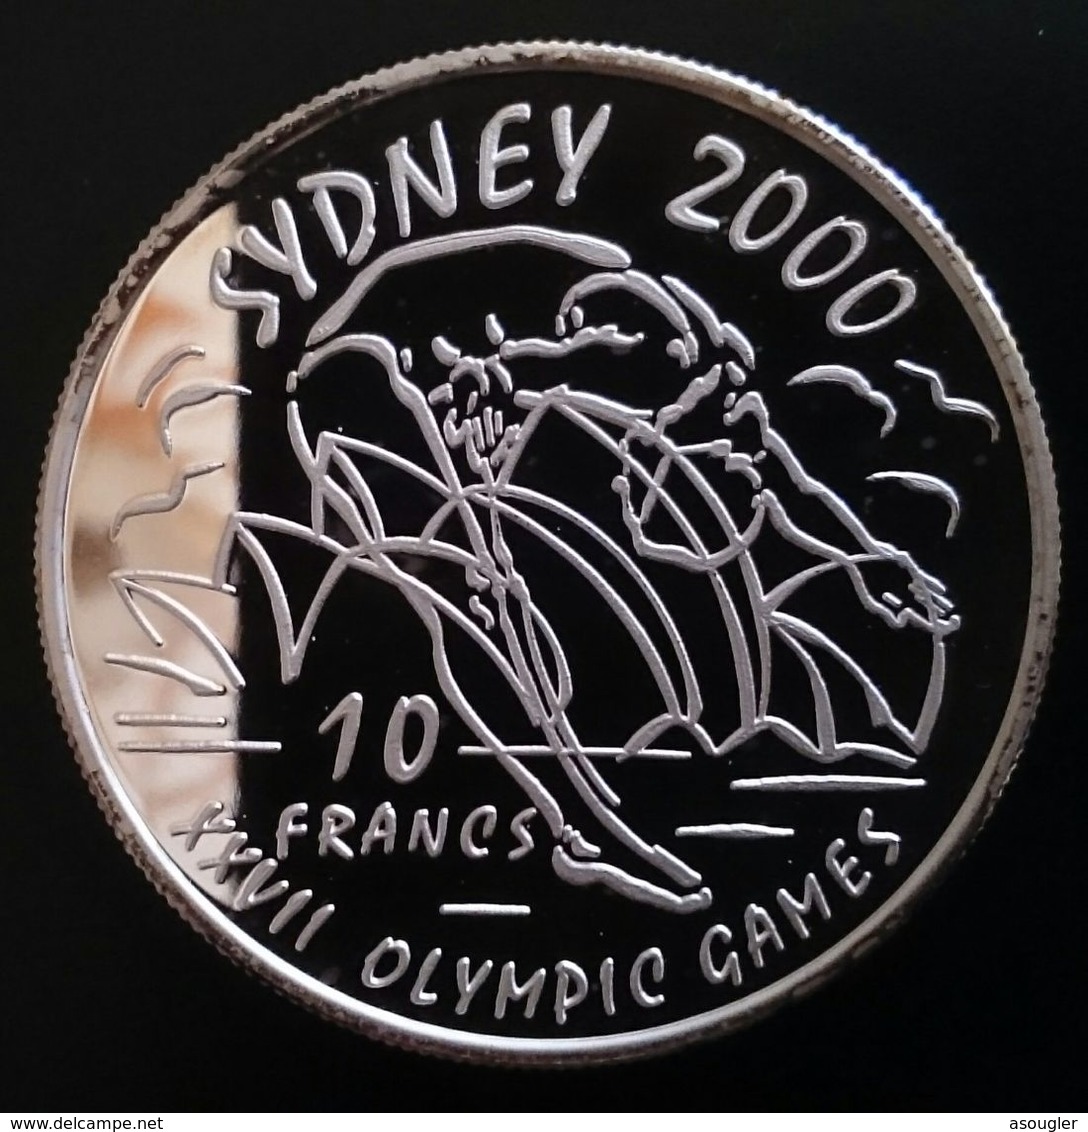 Congo Democratic Republic 10 Francs 1999 SILVER PROOF "Sydney 2000" Free Shipping Via Registered Air Mail - Congo (République Démocratique 1998)